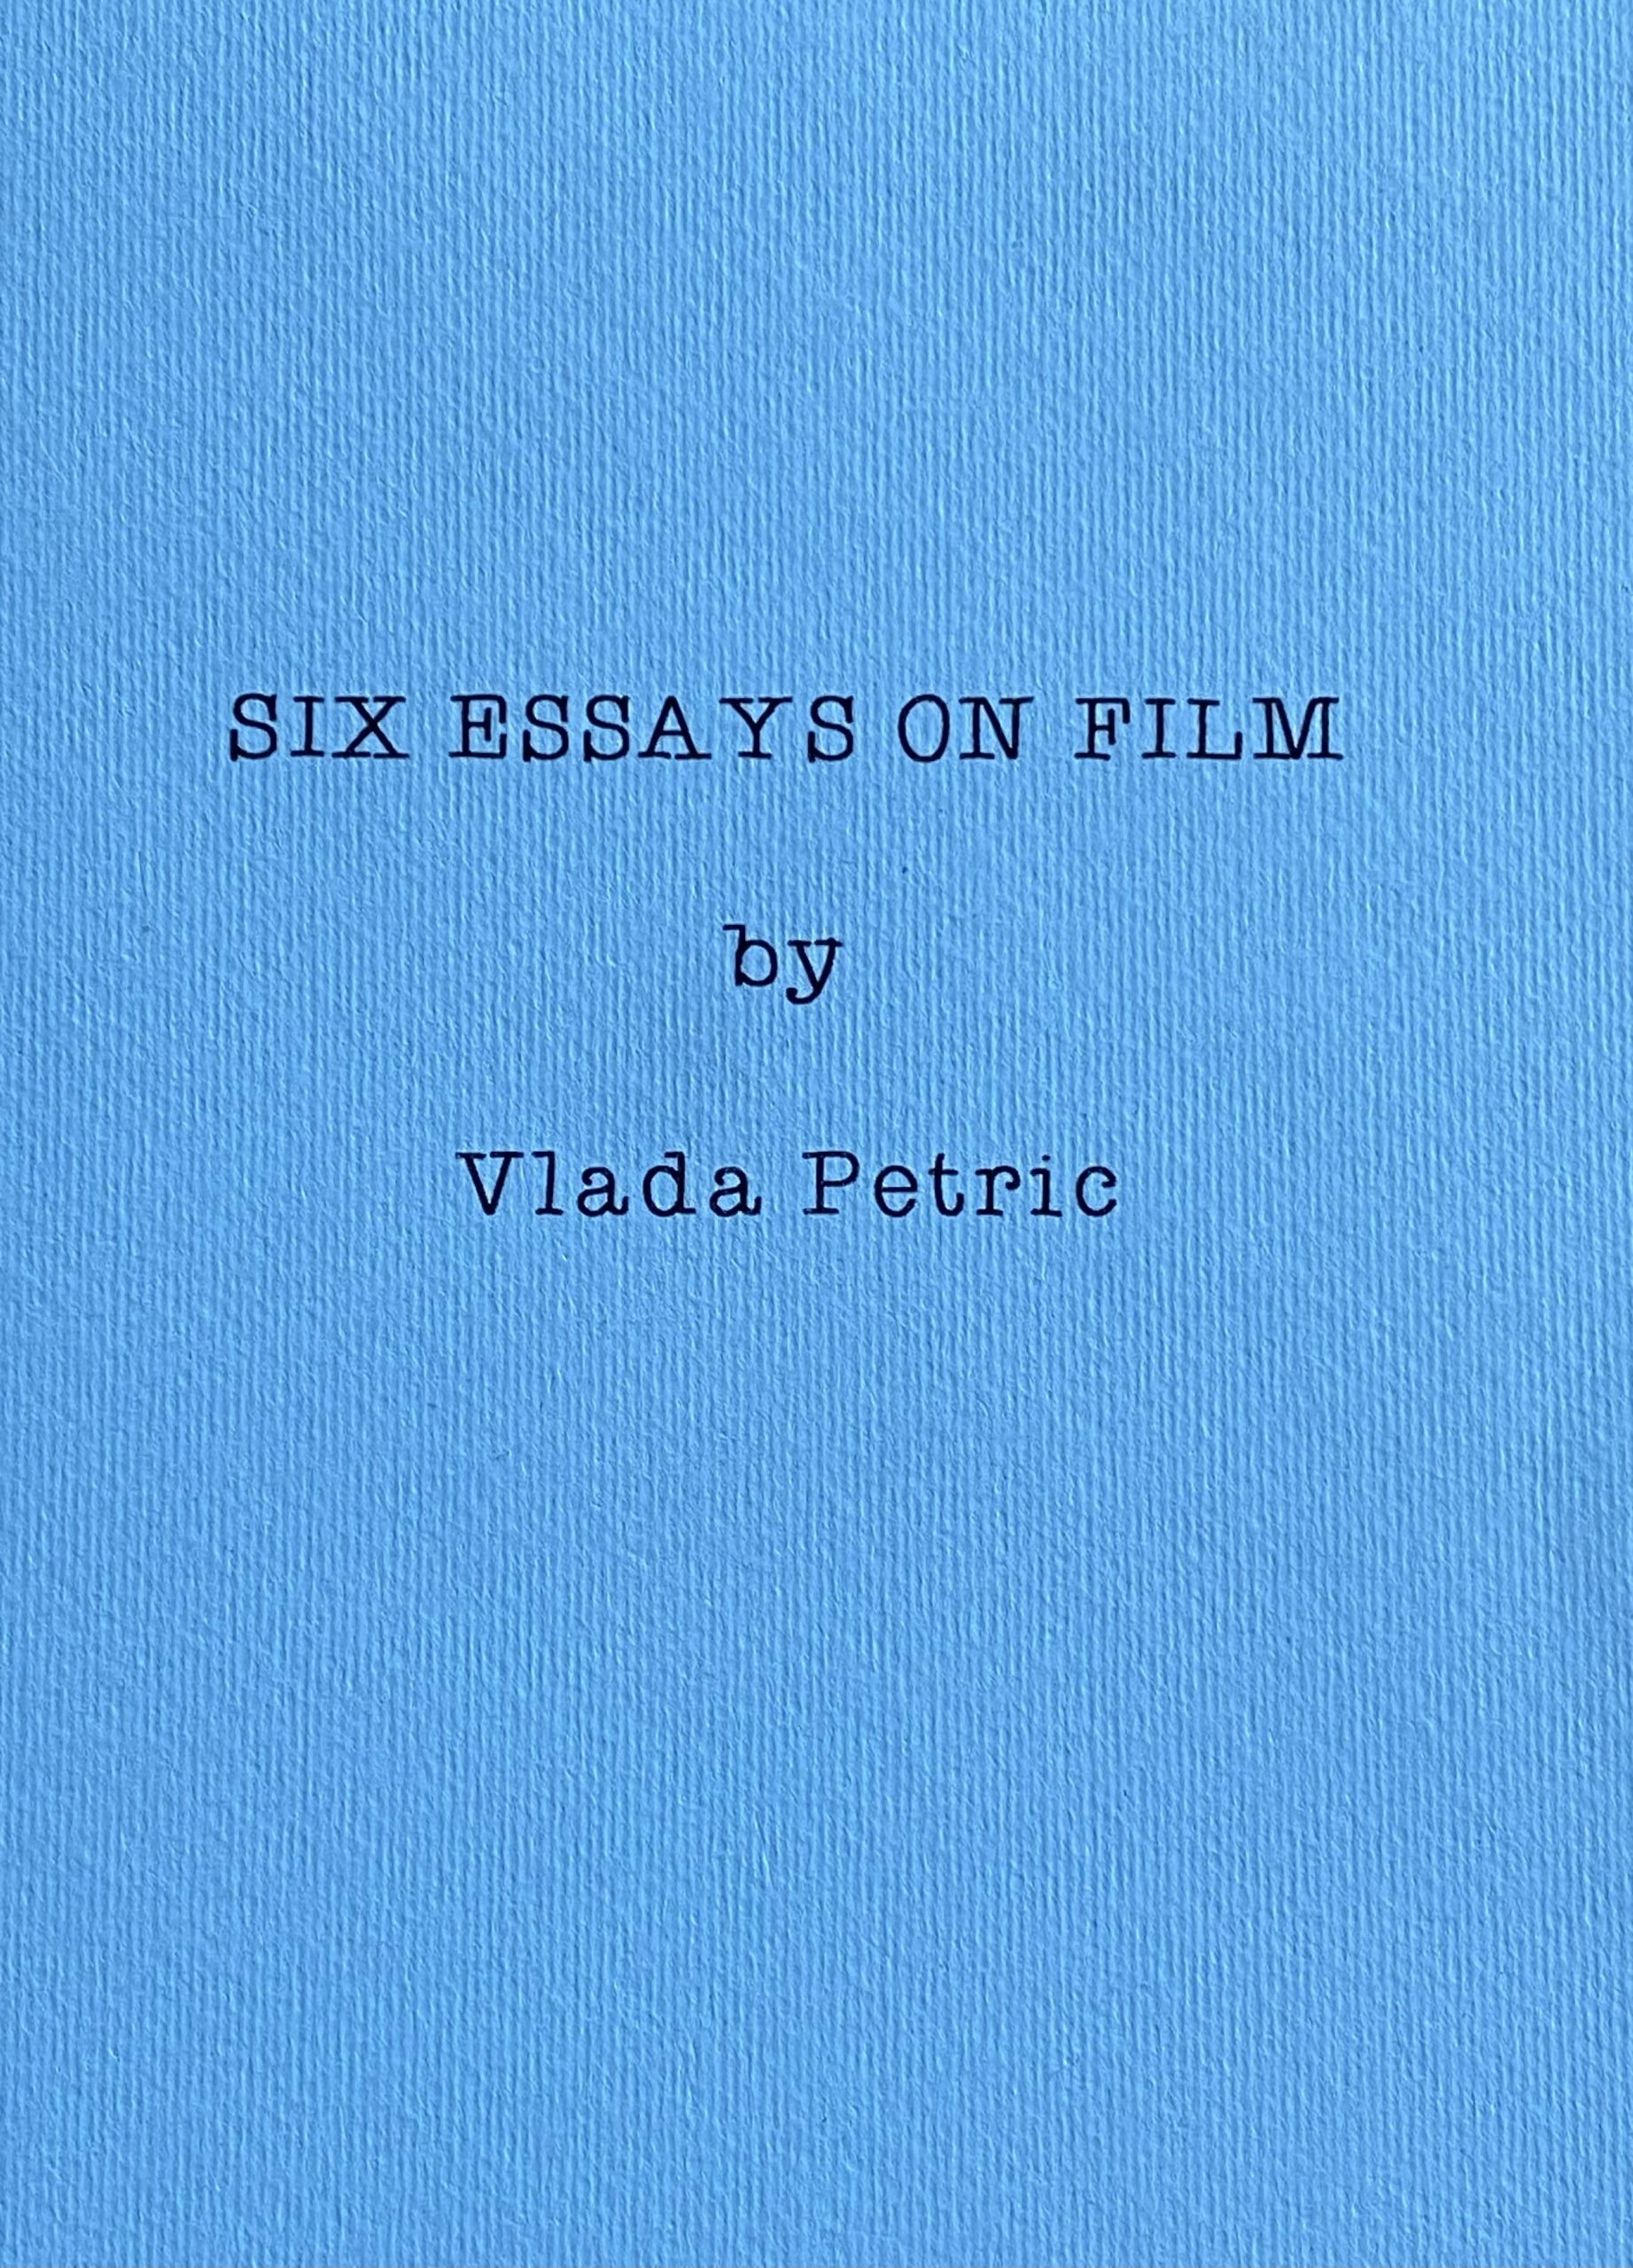 Six Essays on Film